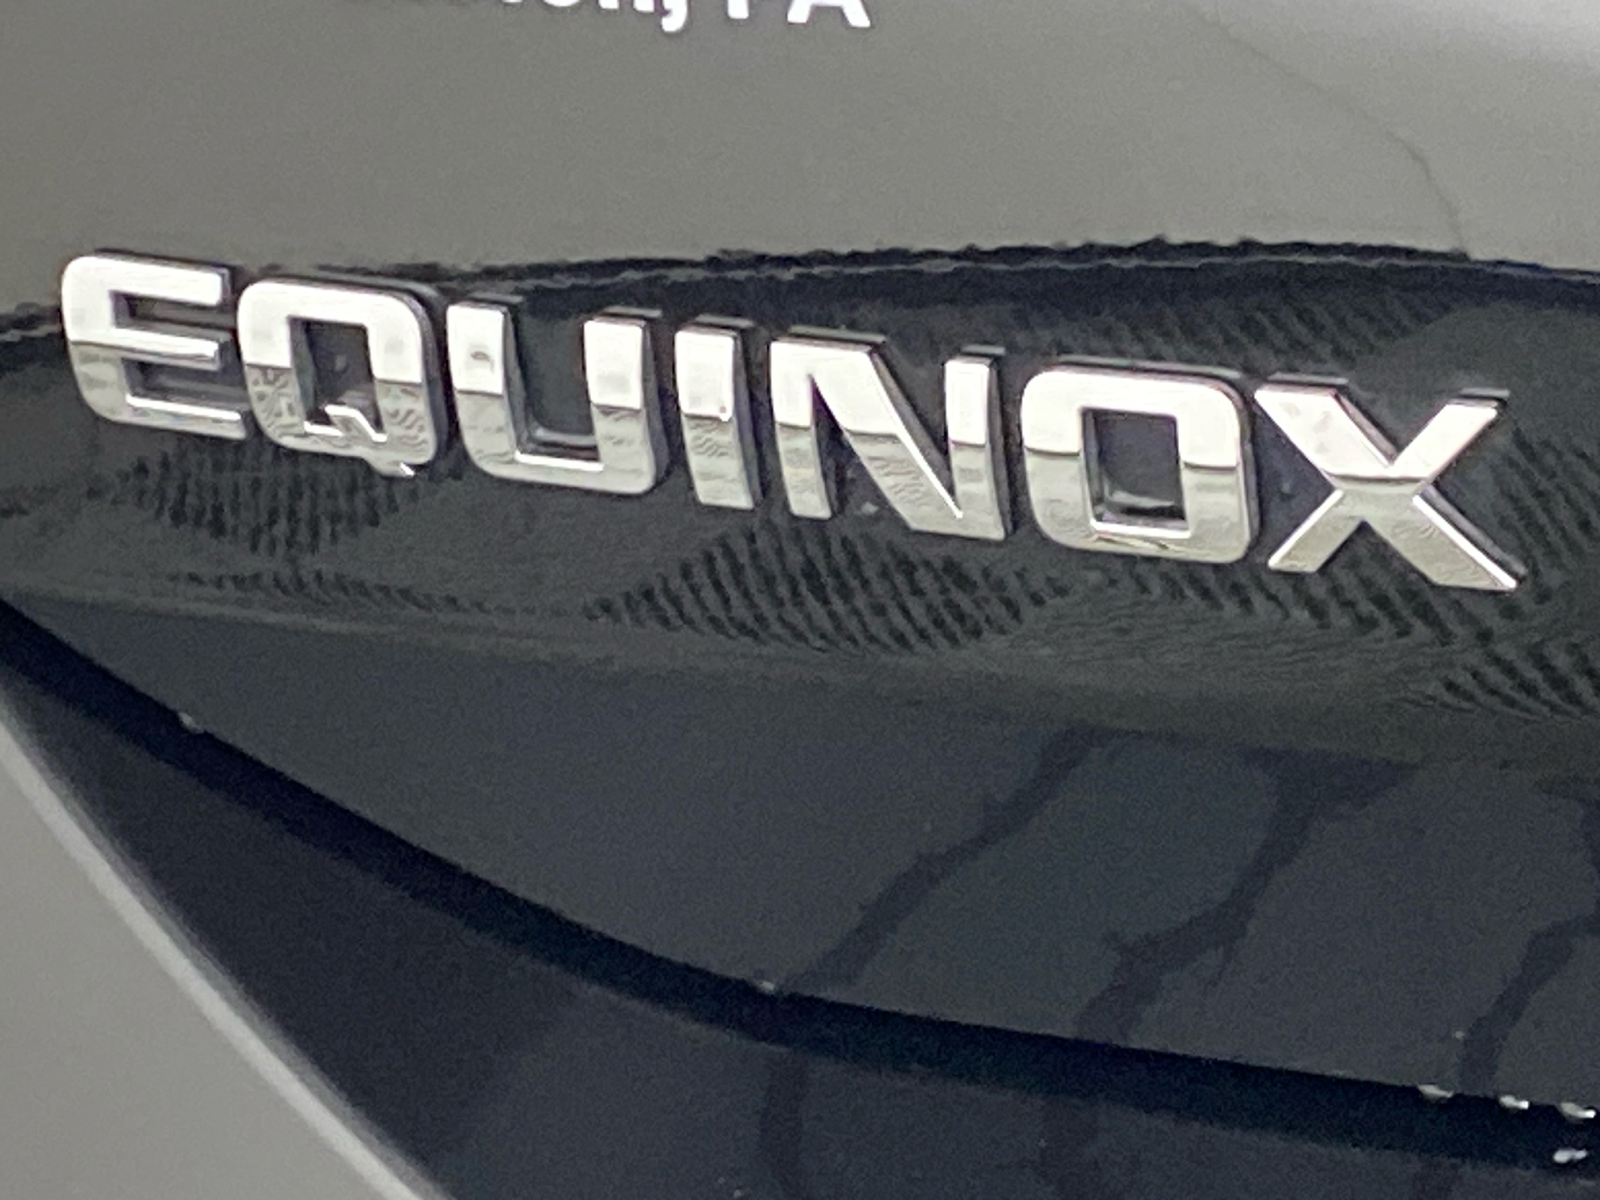 2020 Chevrolet Equinox LS 13